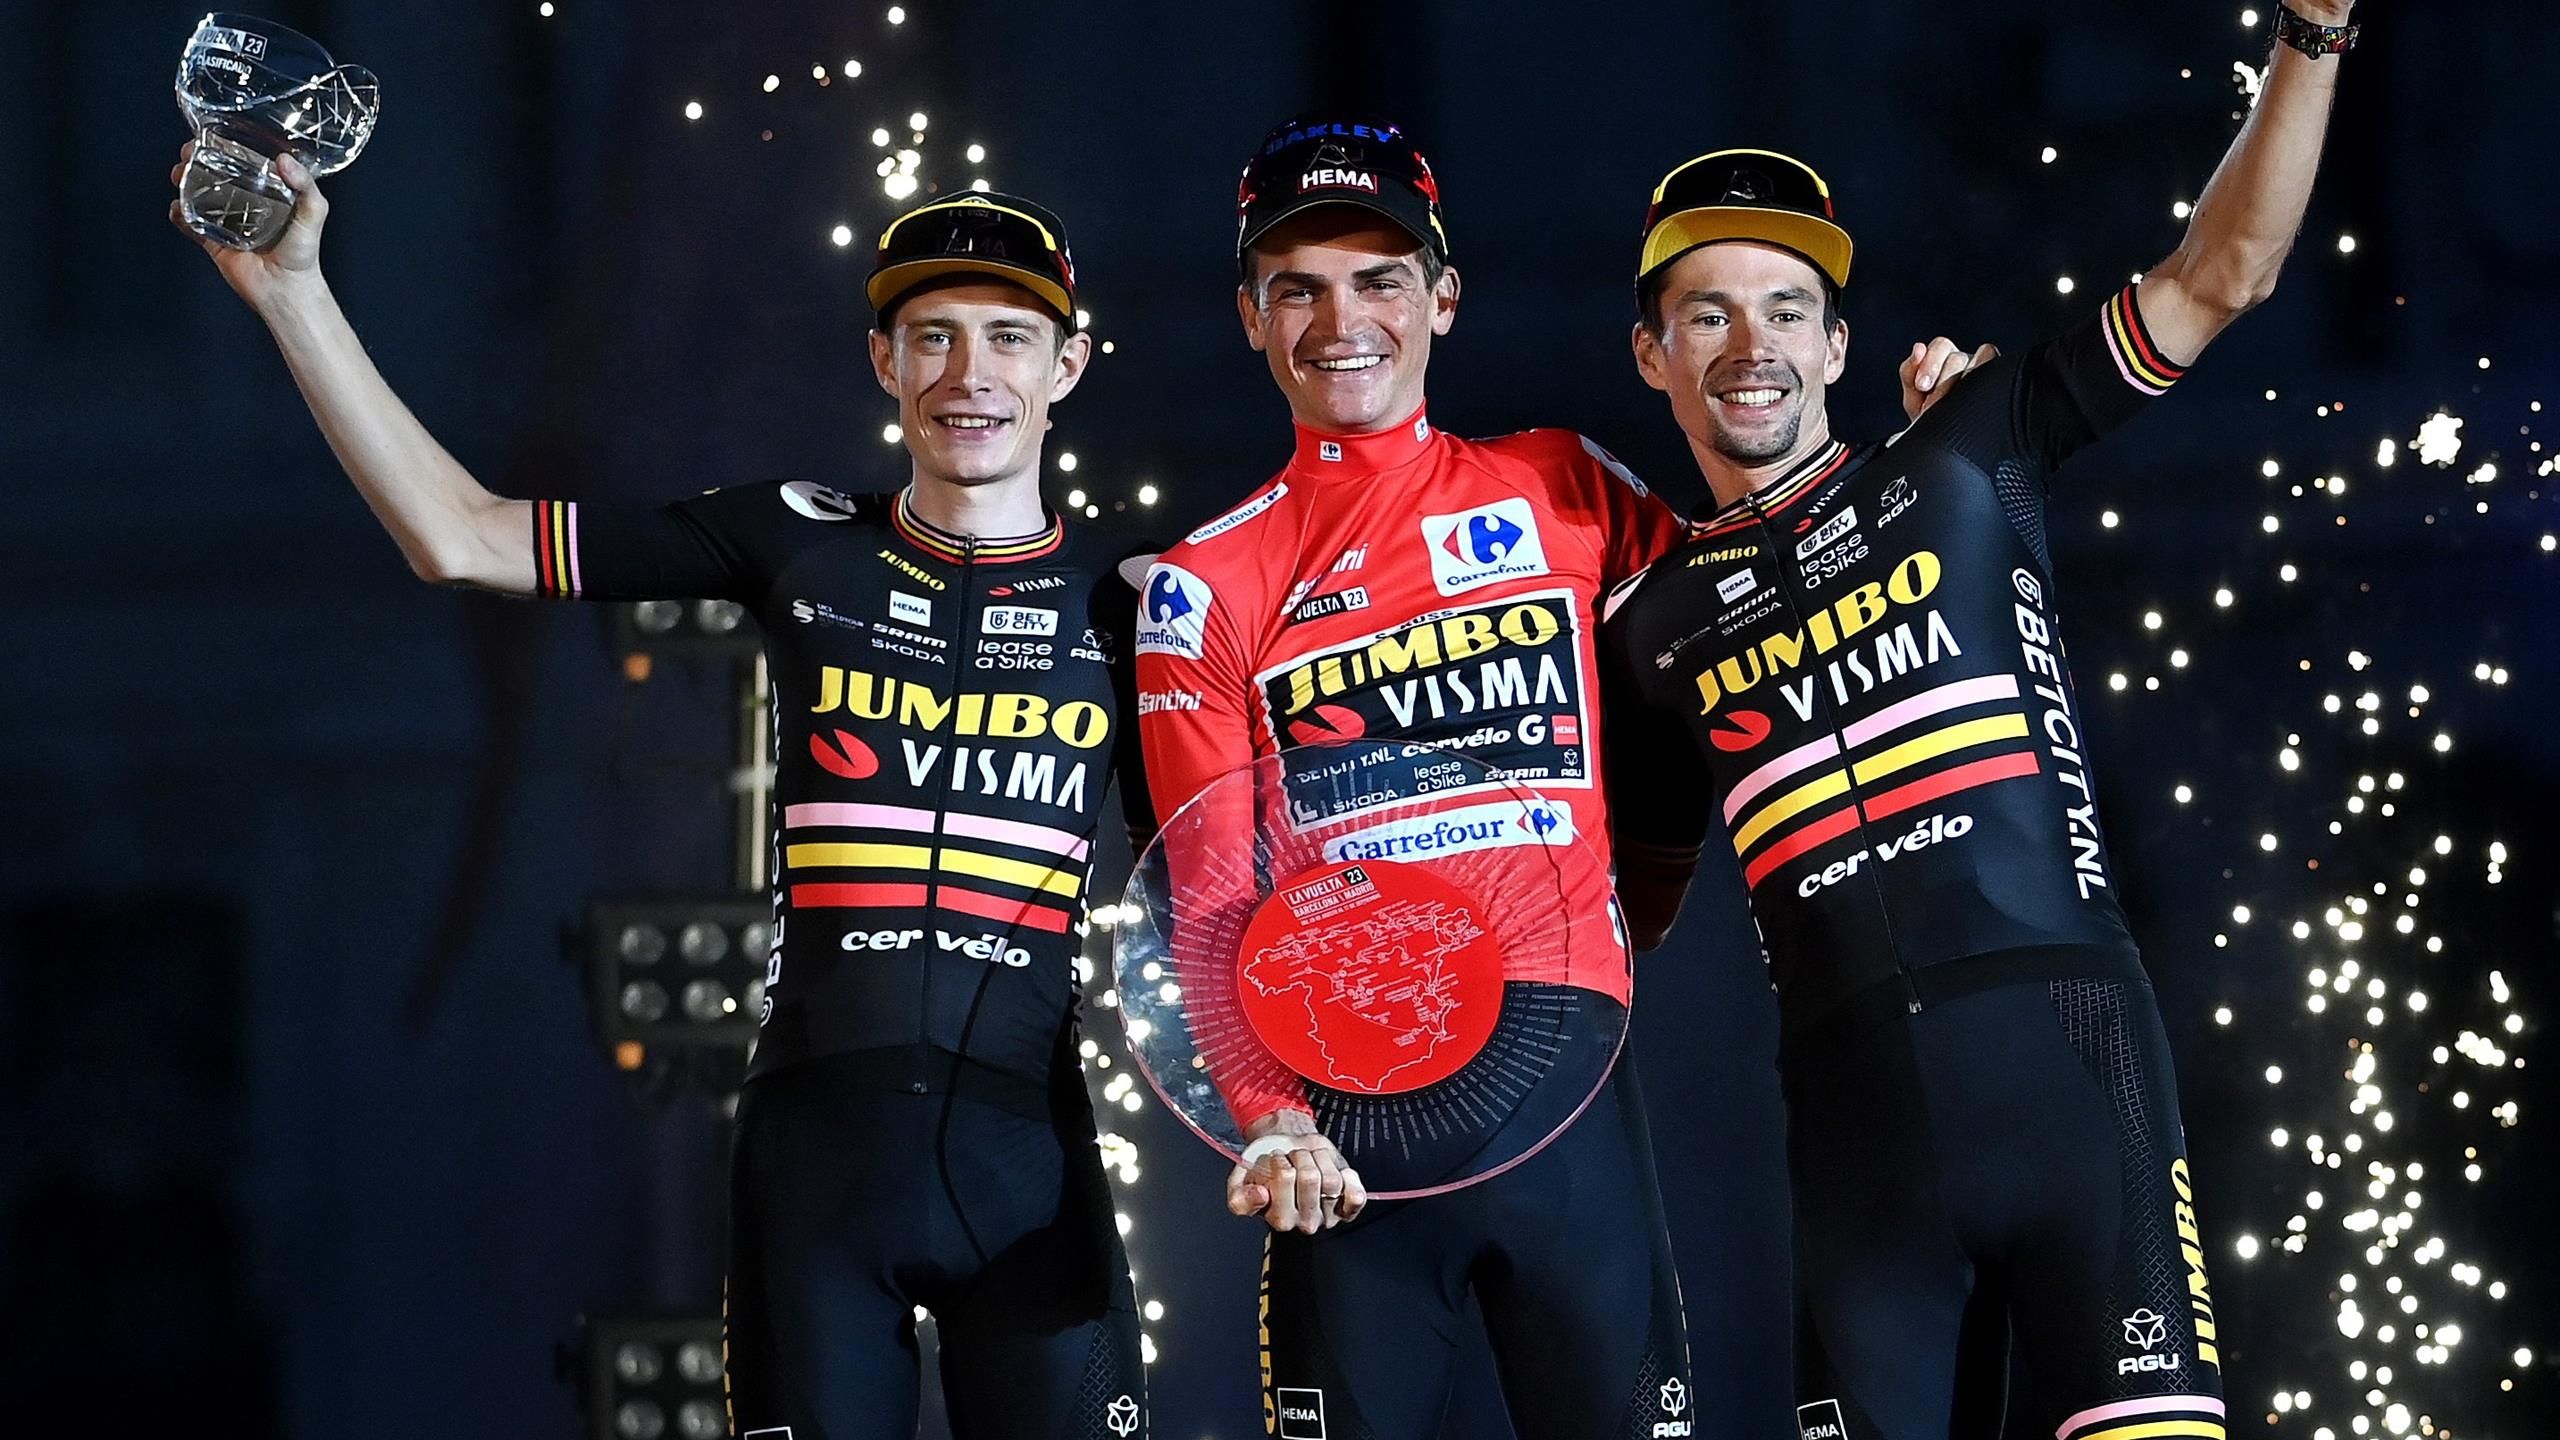 Vuelta Historischer Coup lockt TV-Zuschauer zu Eurosport